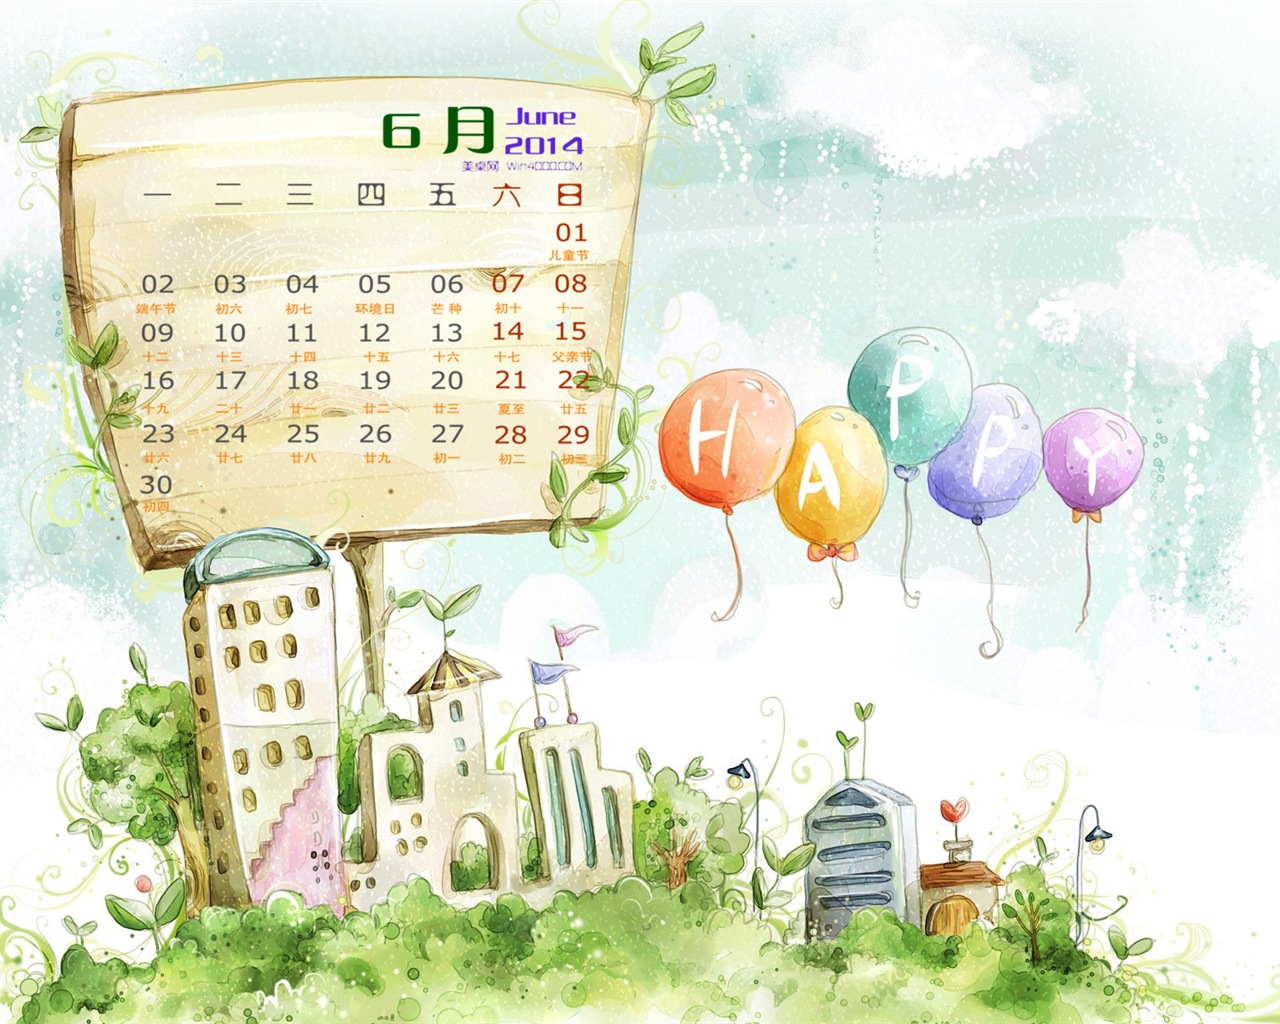 June 2014 calendar wallpaper (1) #11 - 1280x1024